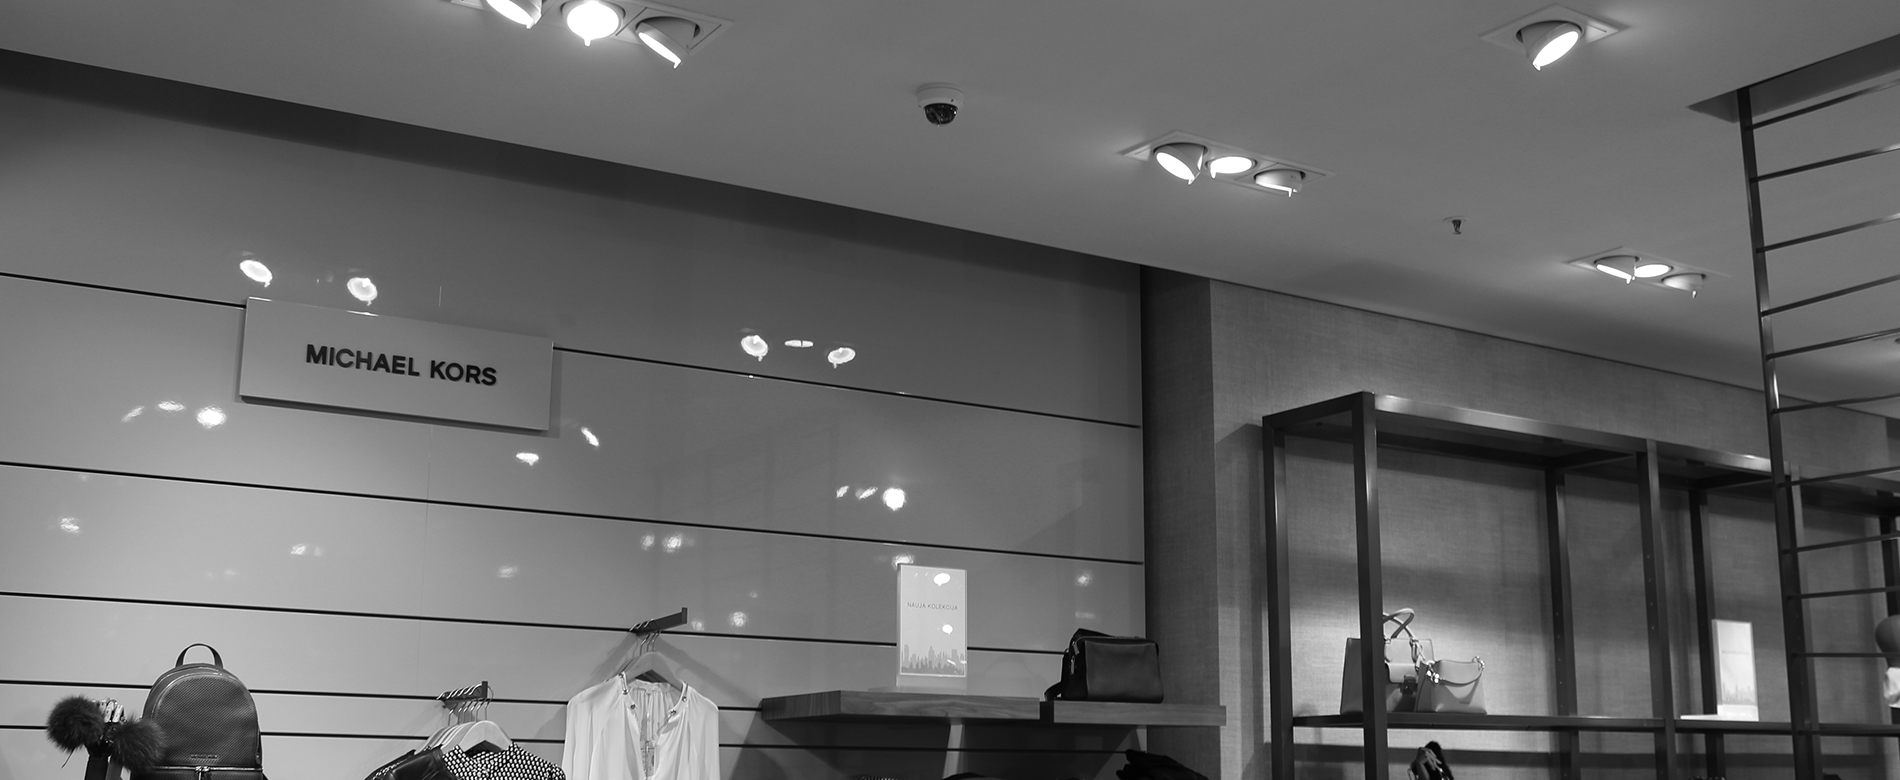 Vaizdo stebėjimo kameros "Massimo Dutti" parduotuvėje